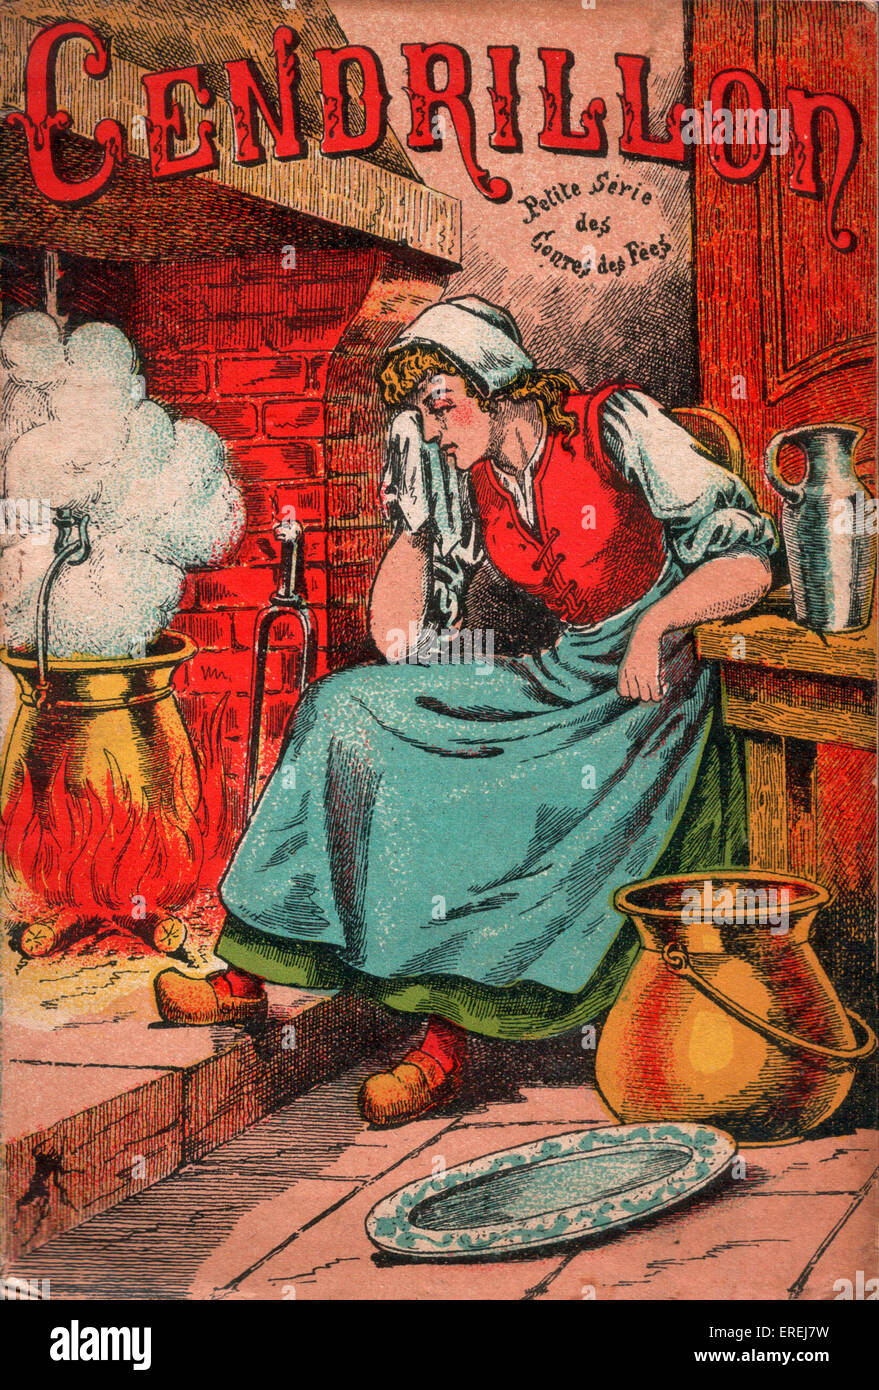 Couverture de l'édition française de Cendrillon, c. 1913. Cendrillon est représenté de pleurer au coin du feu. Banque D'Images